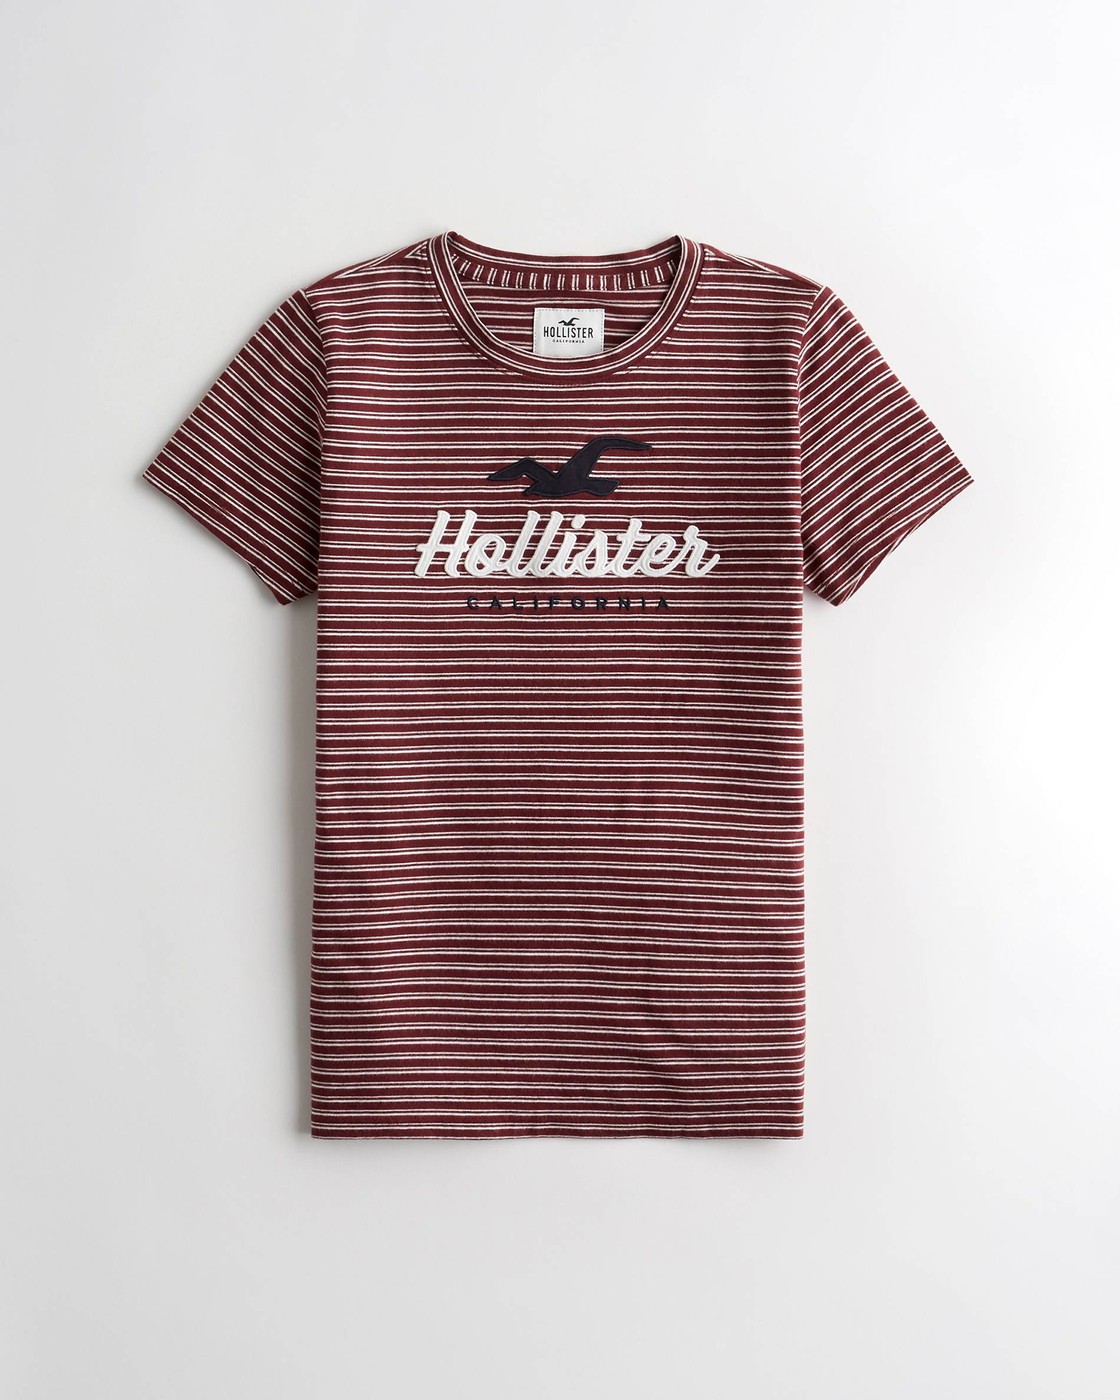 Бордовая футболка - женская футболка Hollister